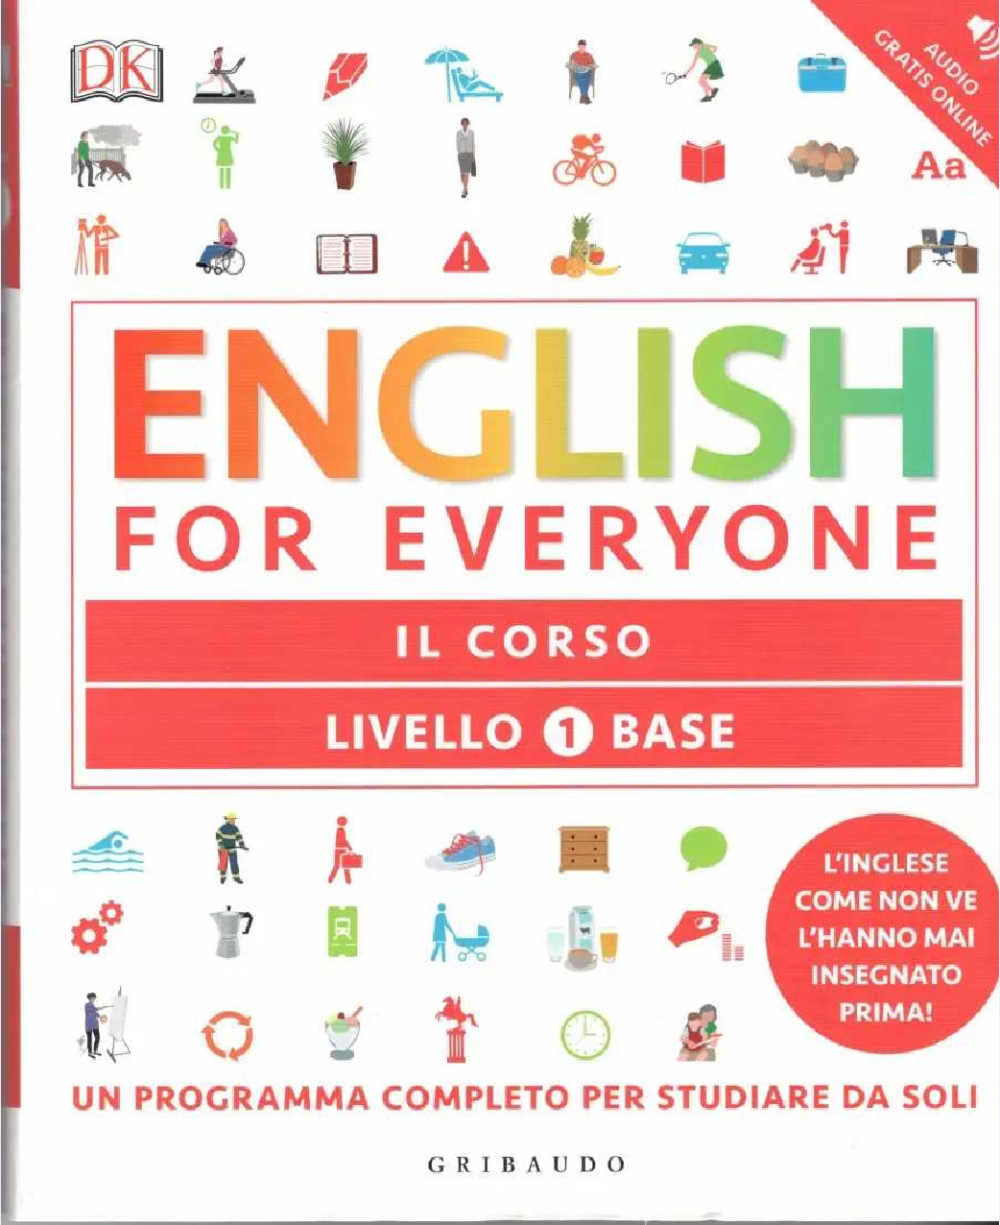 English for everyone. English for everyone Level 1. English for everyone pdf. English for everyone рус pdf. English for everyone level